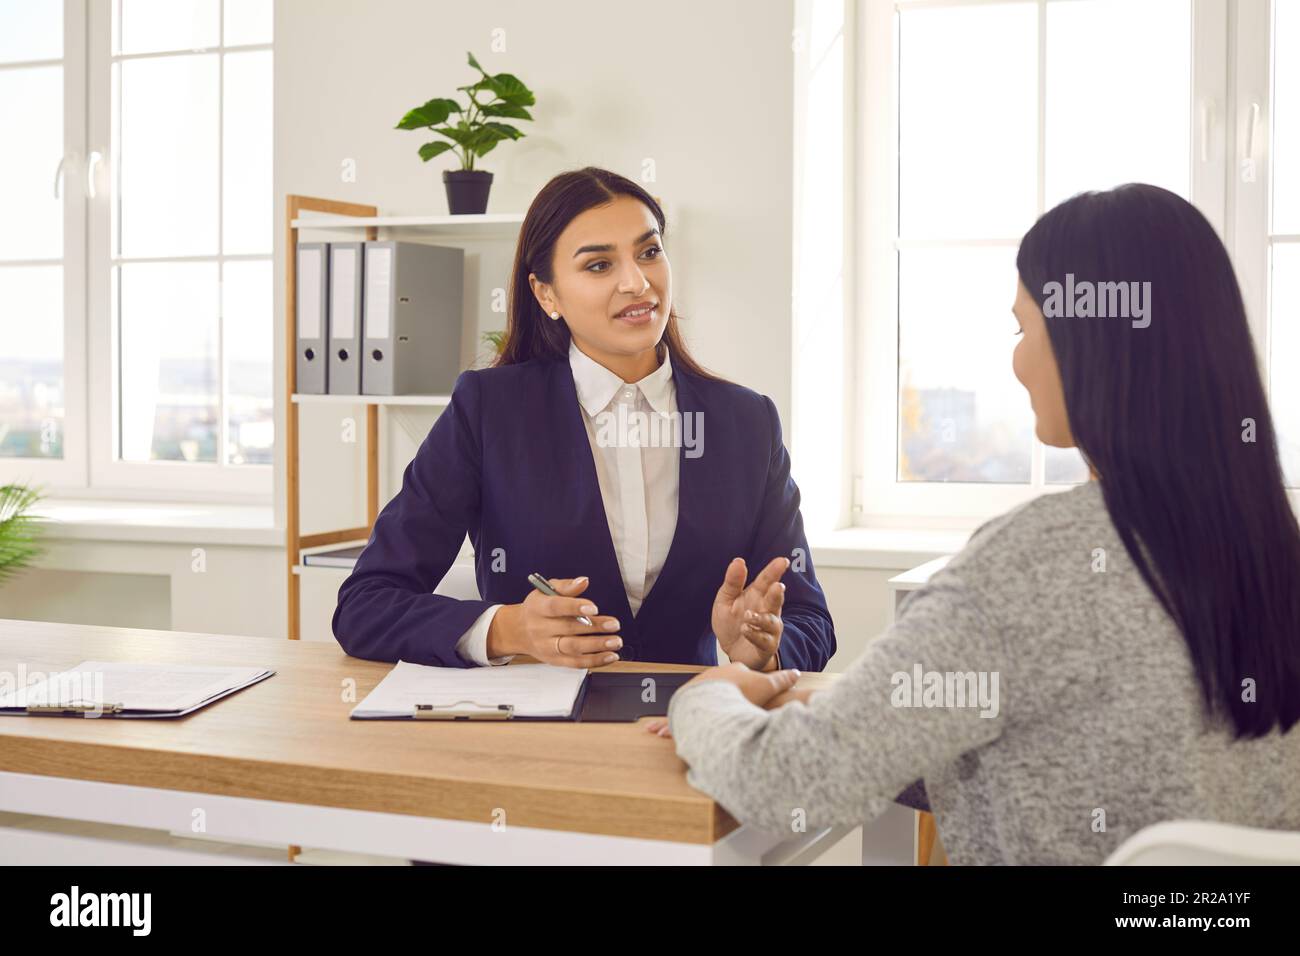 Weibliche einstellende Managerin oder Geschäftsberaterin, die mit einem Kandidaten oder Kunden kommuniziert Stockfoto